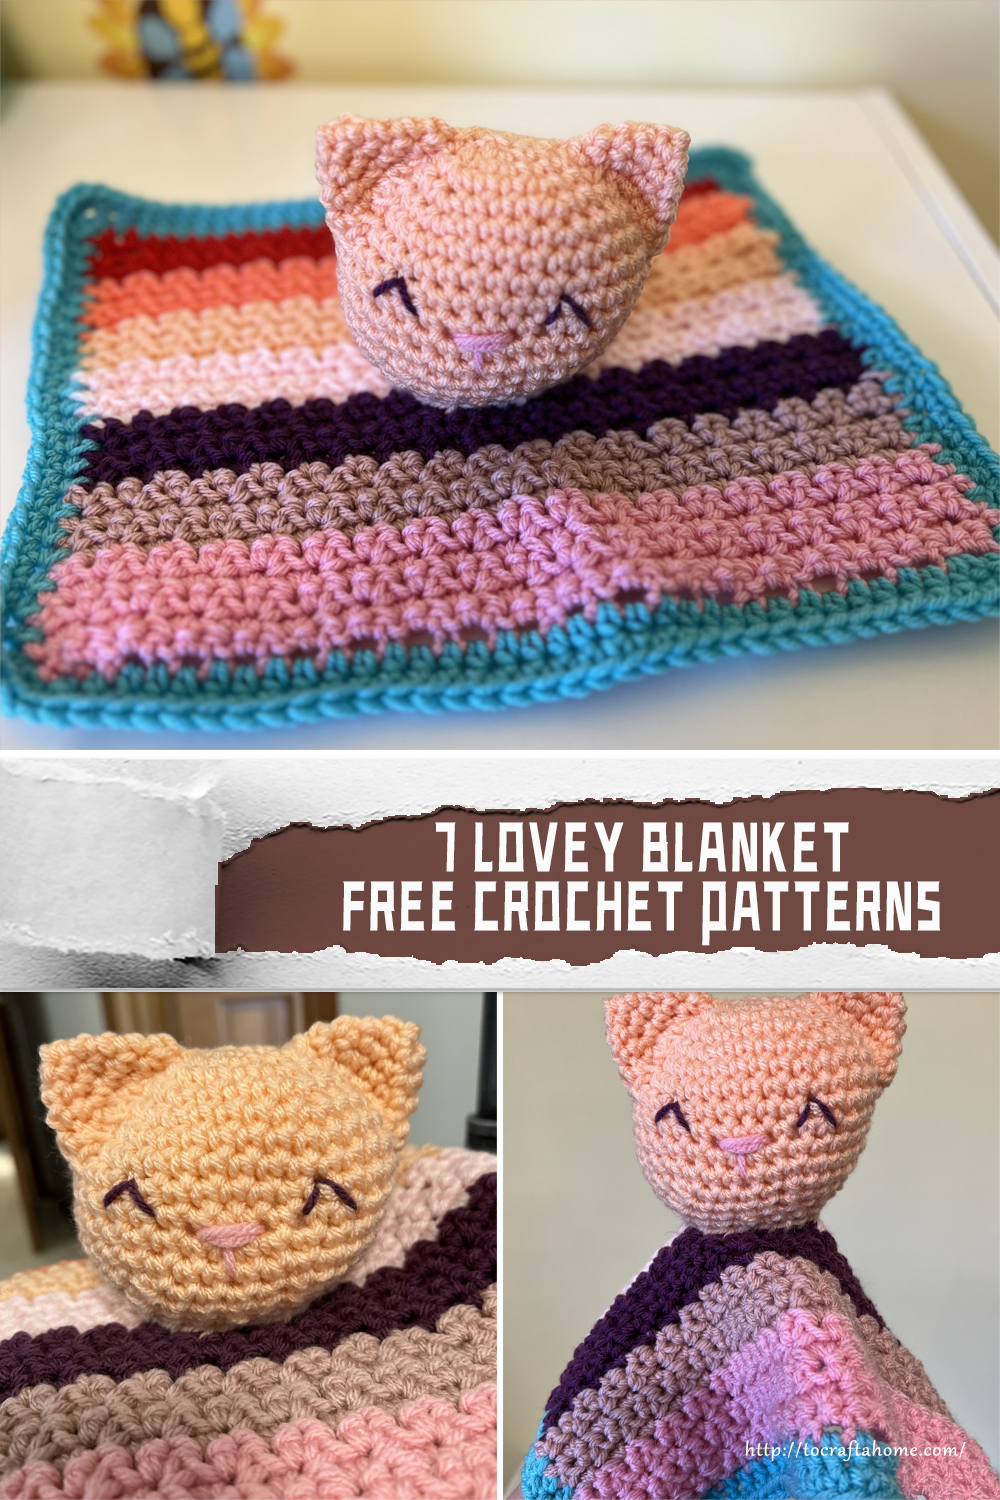 7 Lovey Blanket Crochet Patterns - FREE